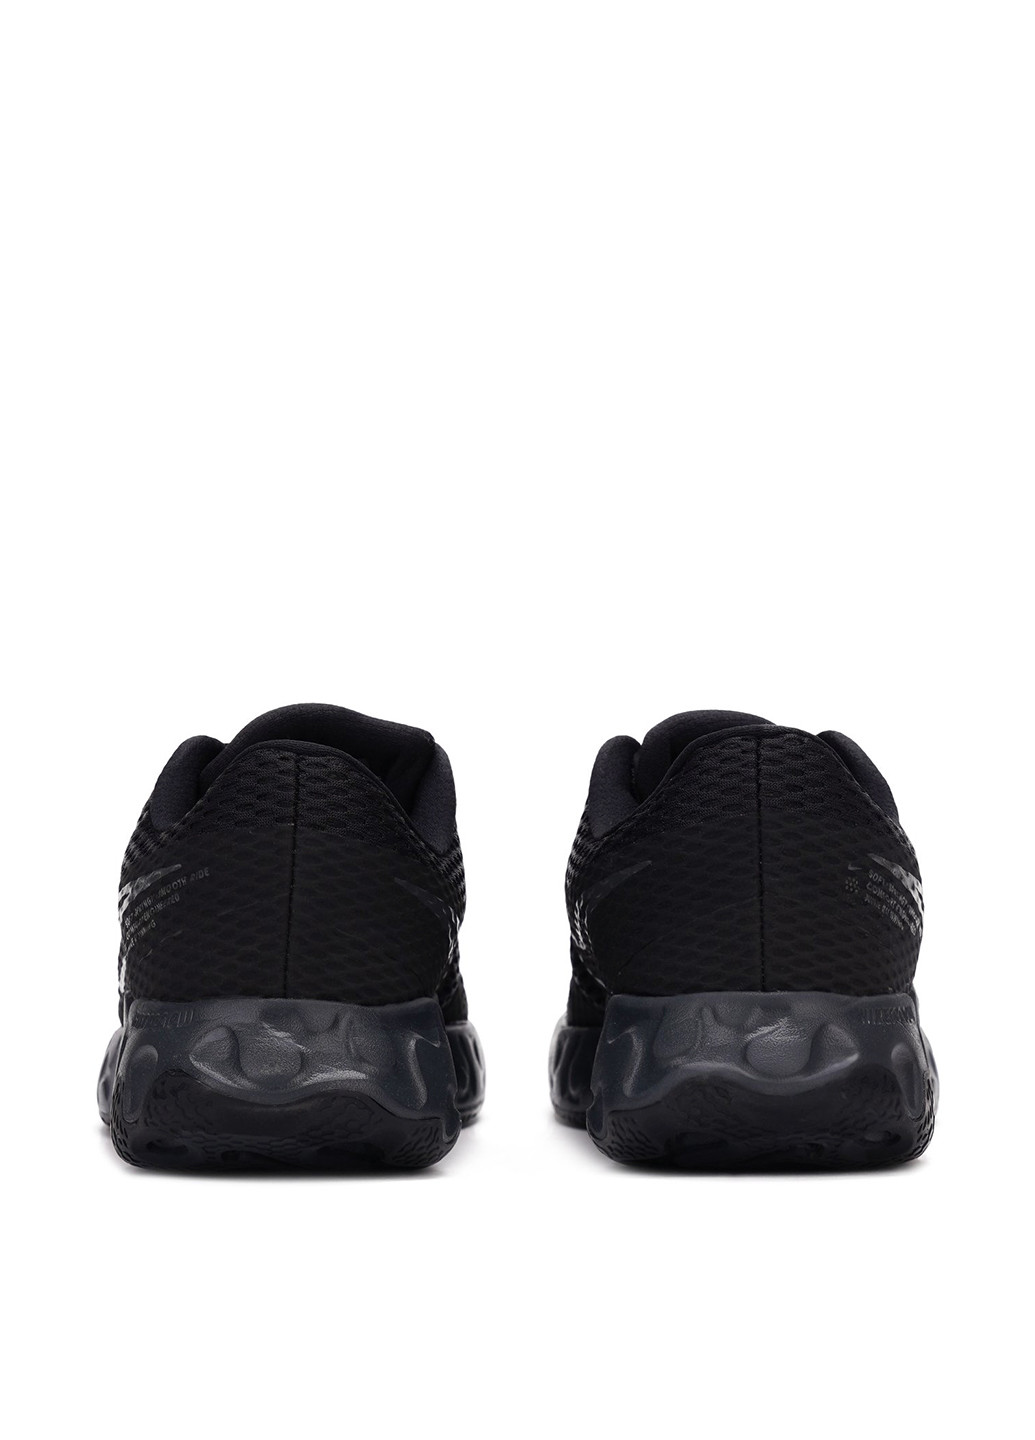 Черные демисезонные кроссовки Nike Renew Ride 2